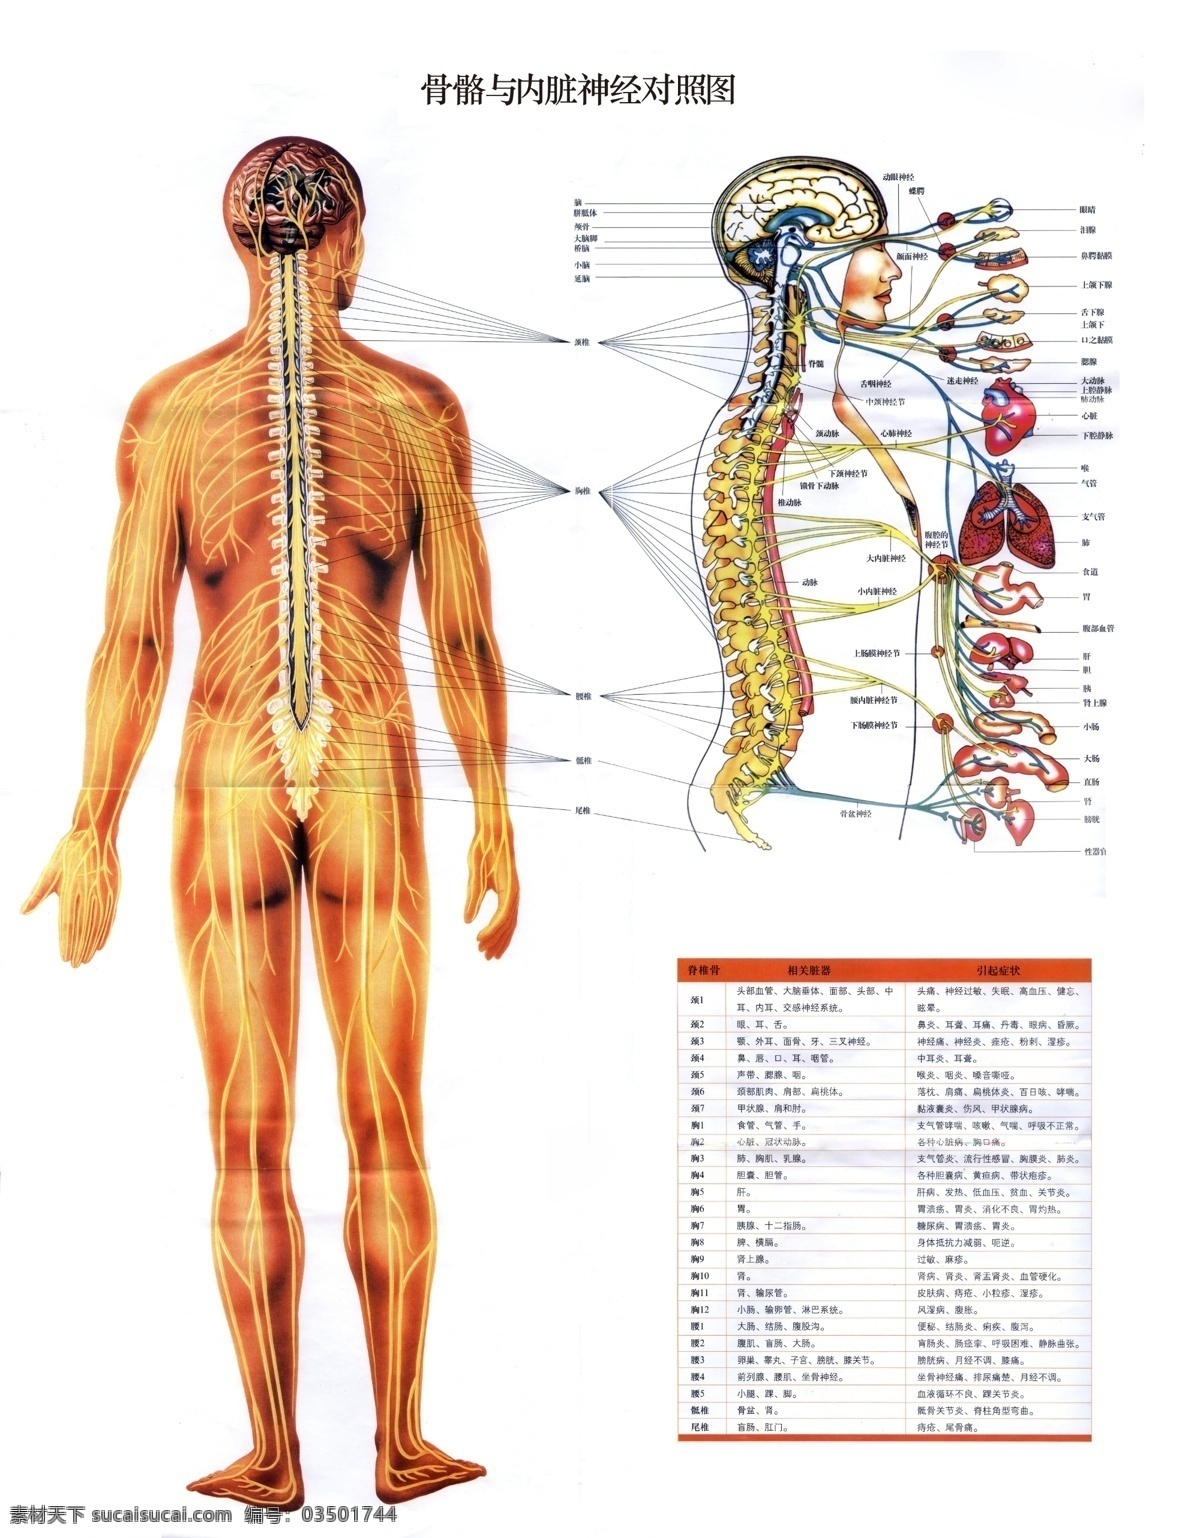 骨骼 内脏 神经 对照 展板 人体 医学 对照图 展板模板 广告设计模板 源文件